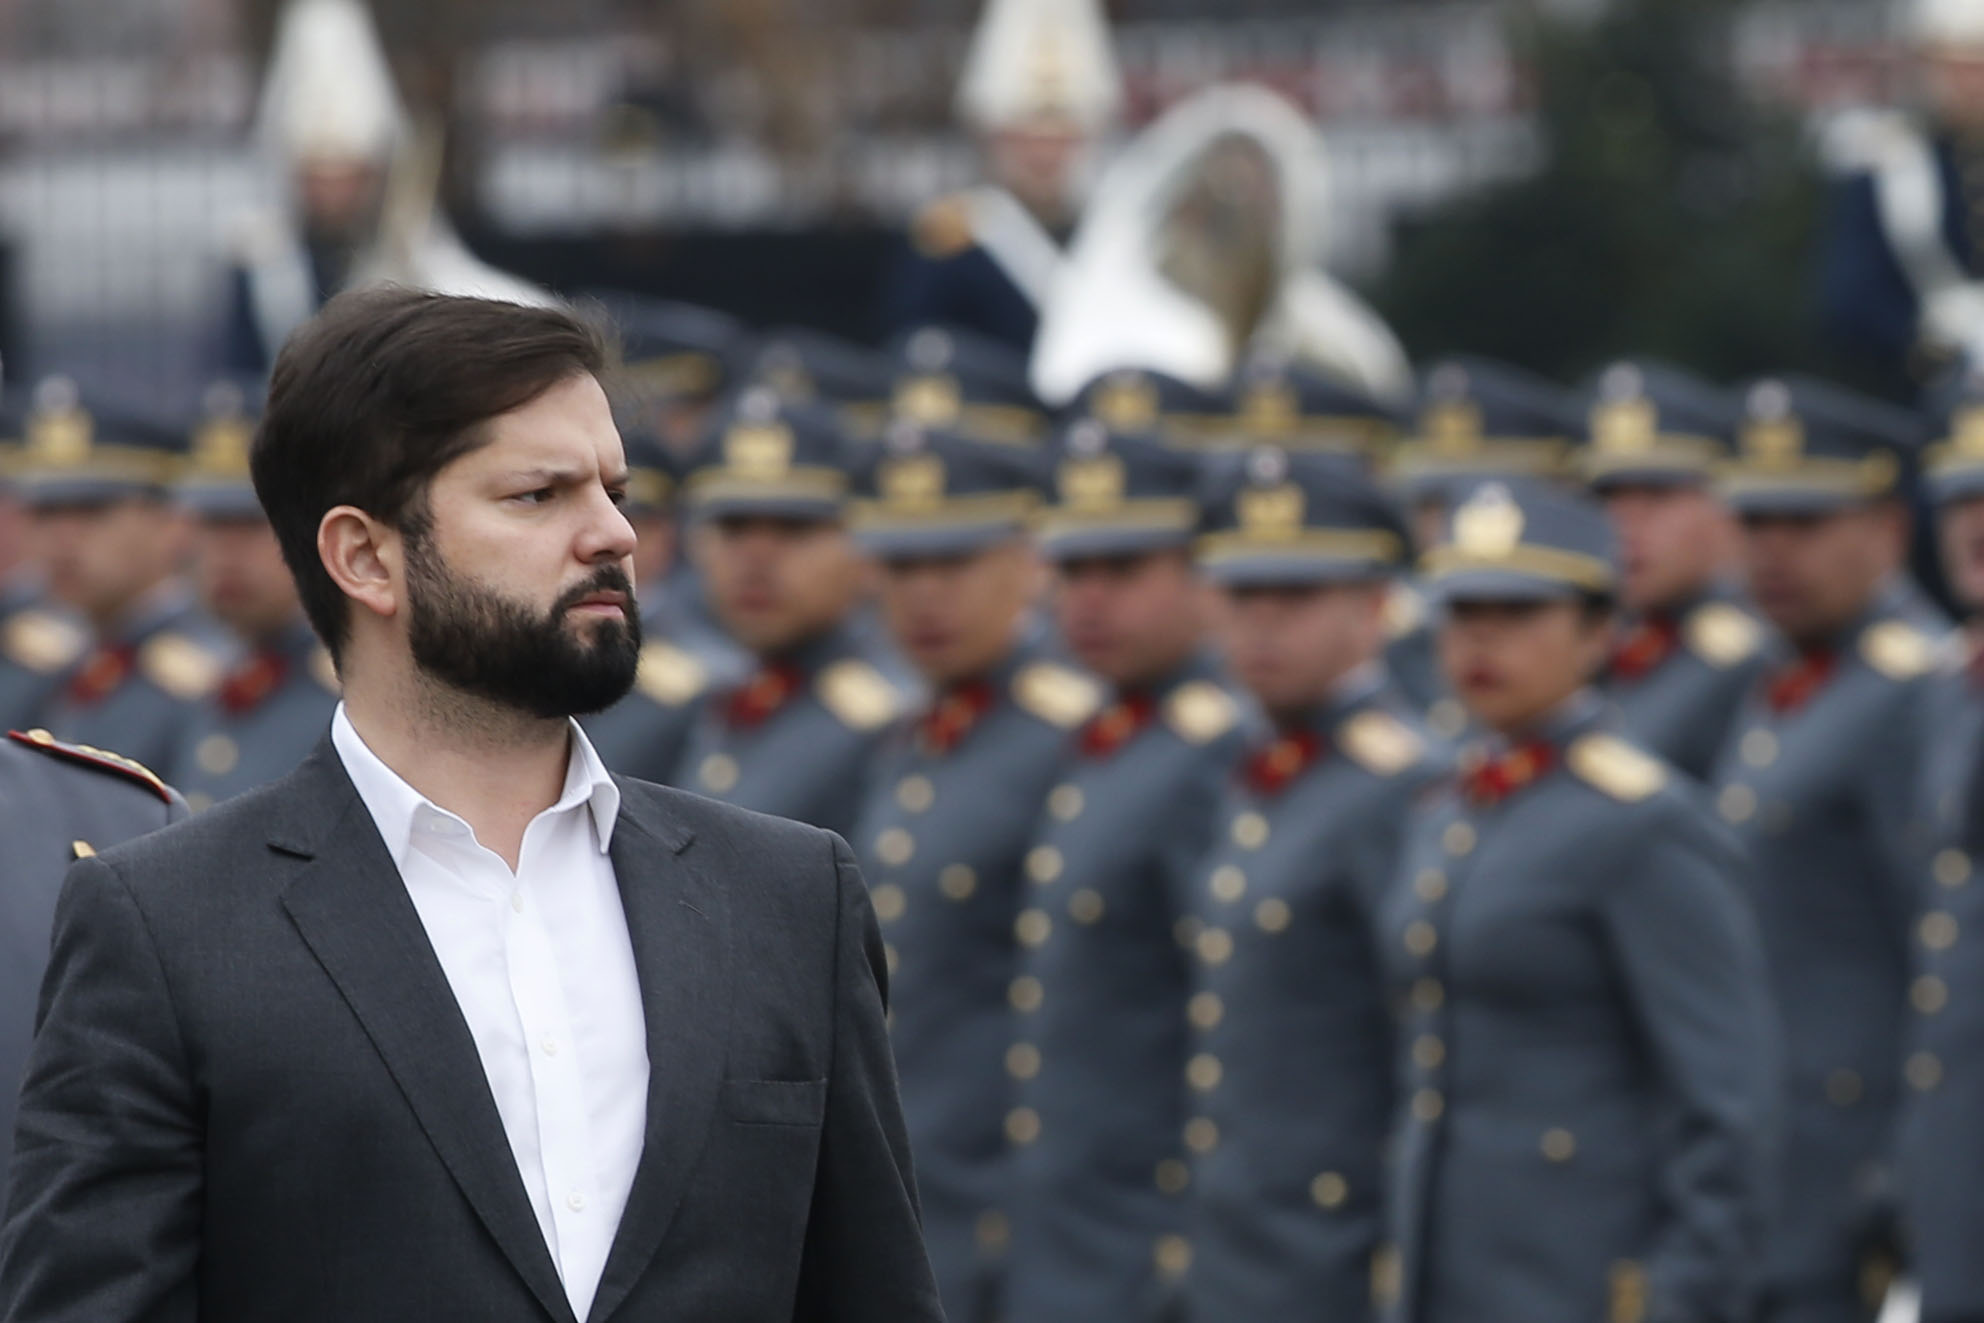 El Presidente de la Republica, Gabriel Boric, participa de la Ceremonia de Juramento de la Bandera, organizada por el Ejercito.